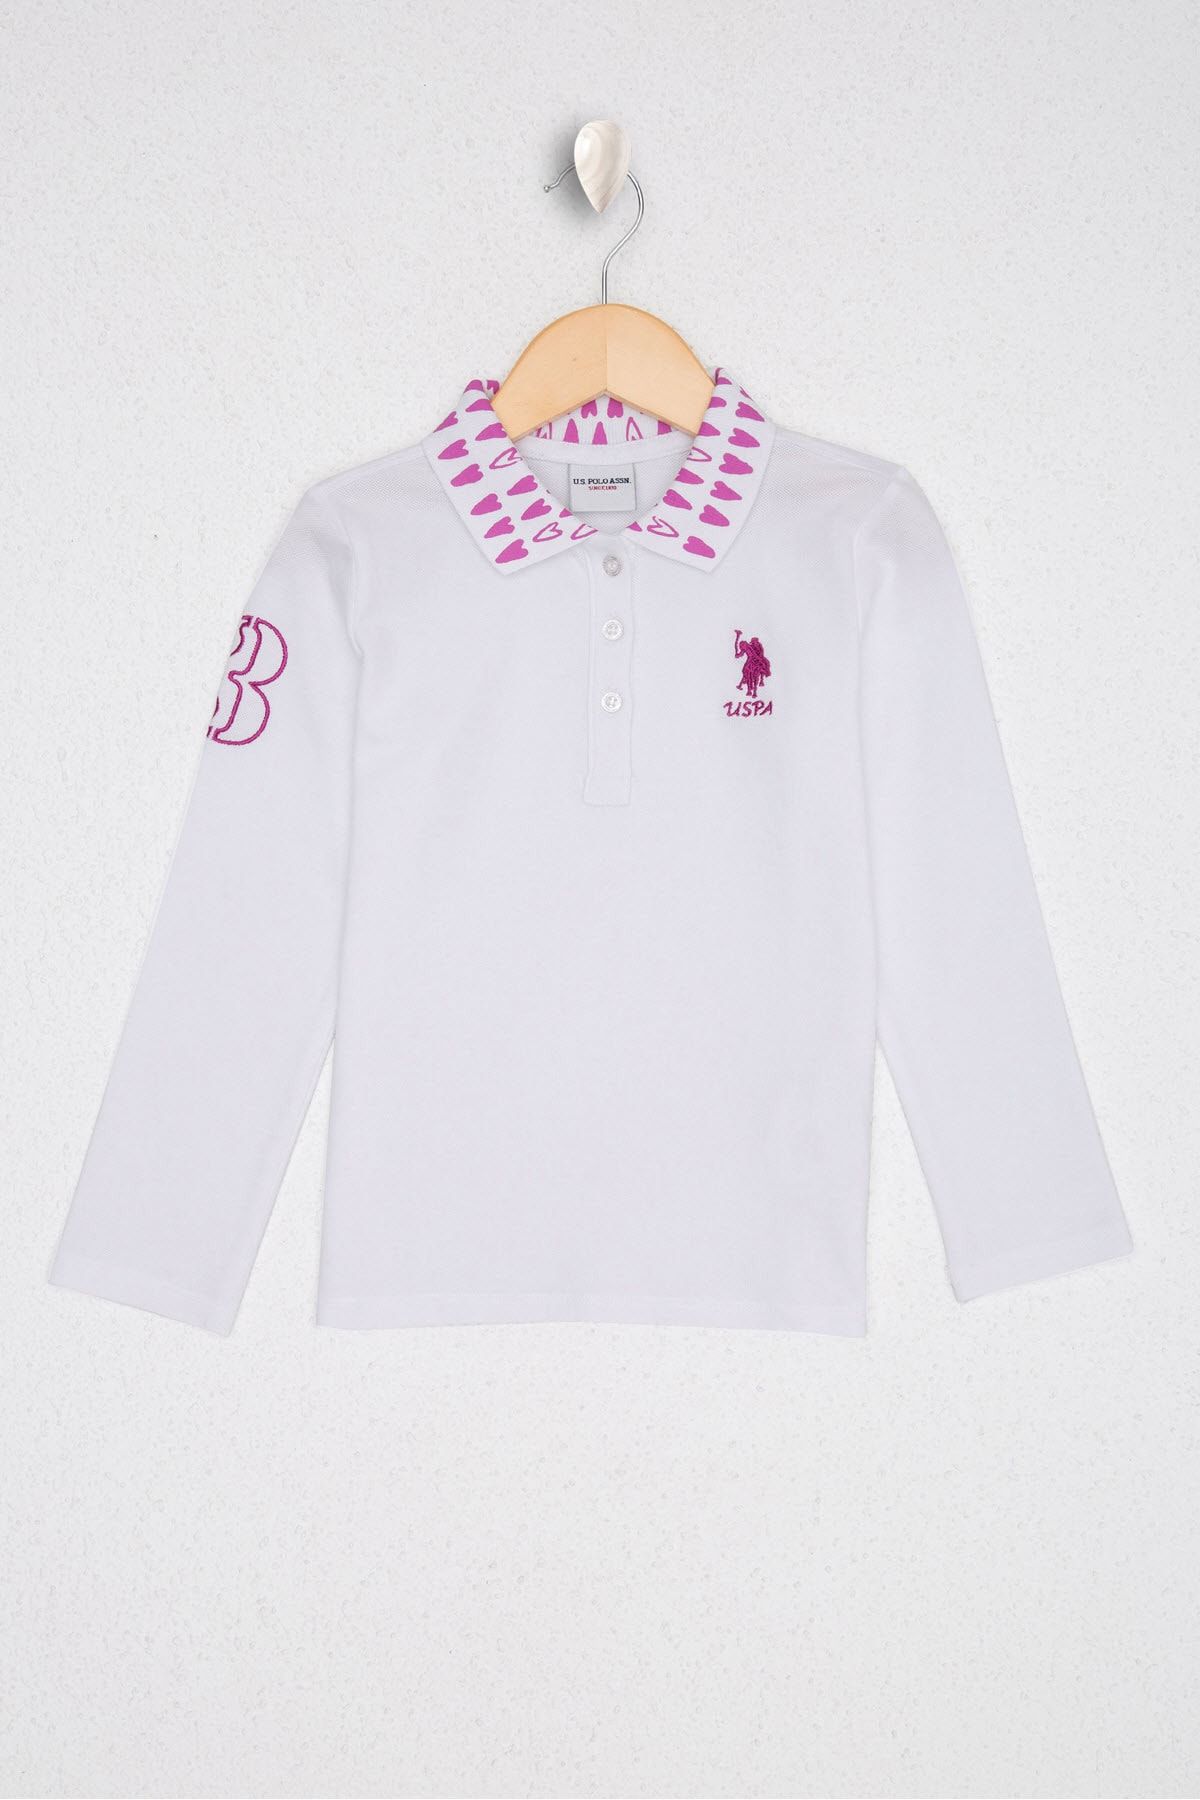 U.S. Polo Assn. Beyaz Kız Çocuk Sweatshirt